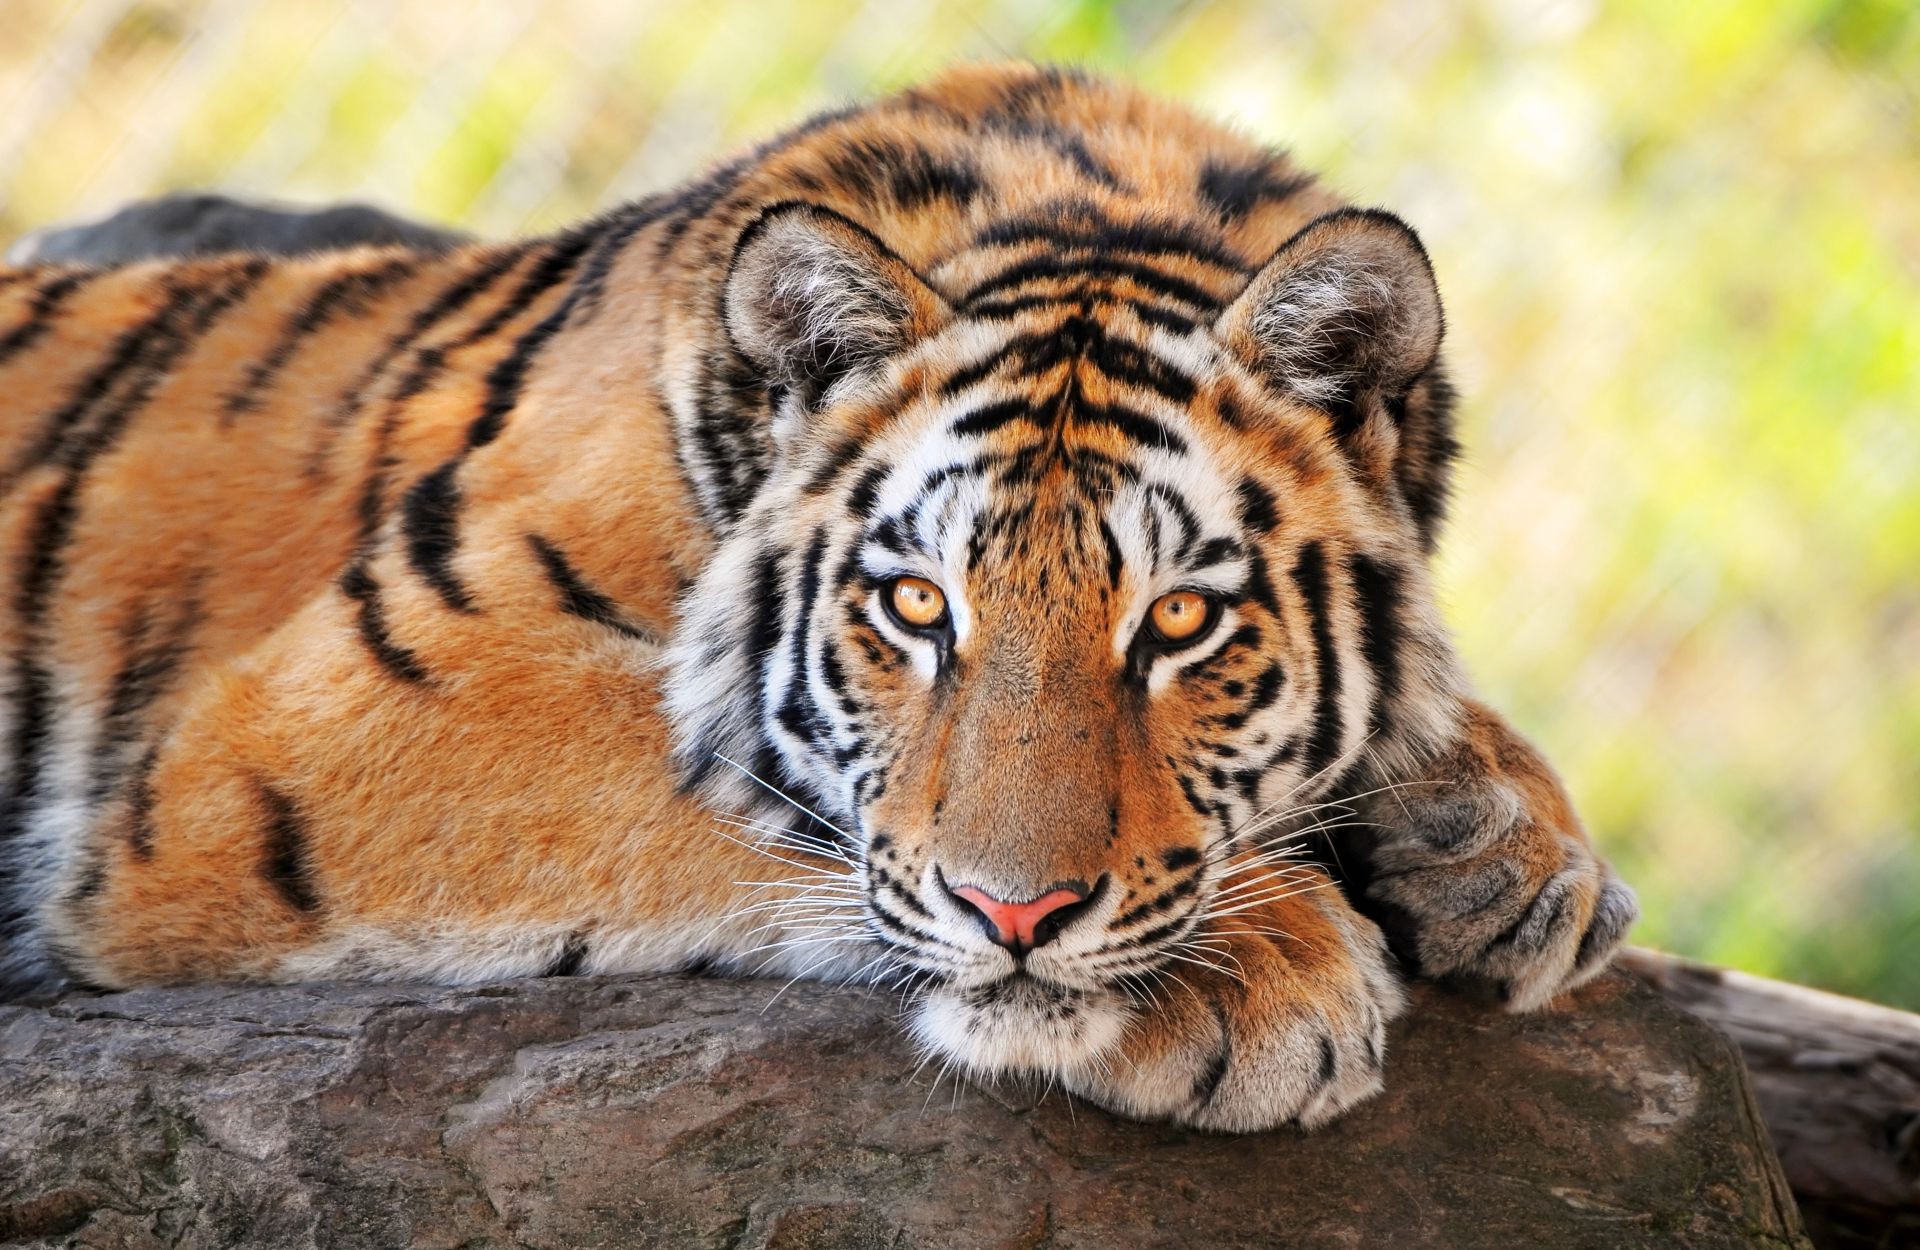 тигры дикой природы кошка тигр хищник животное млекопитающее дикий сафари зоопарк джунгли природа охотник мясоед глава охота мех большой полоса агрессии злой